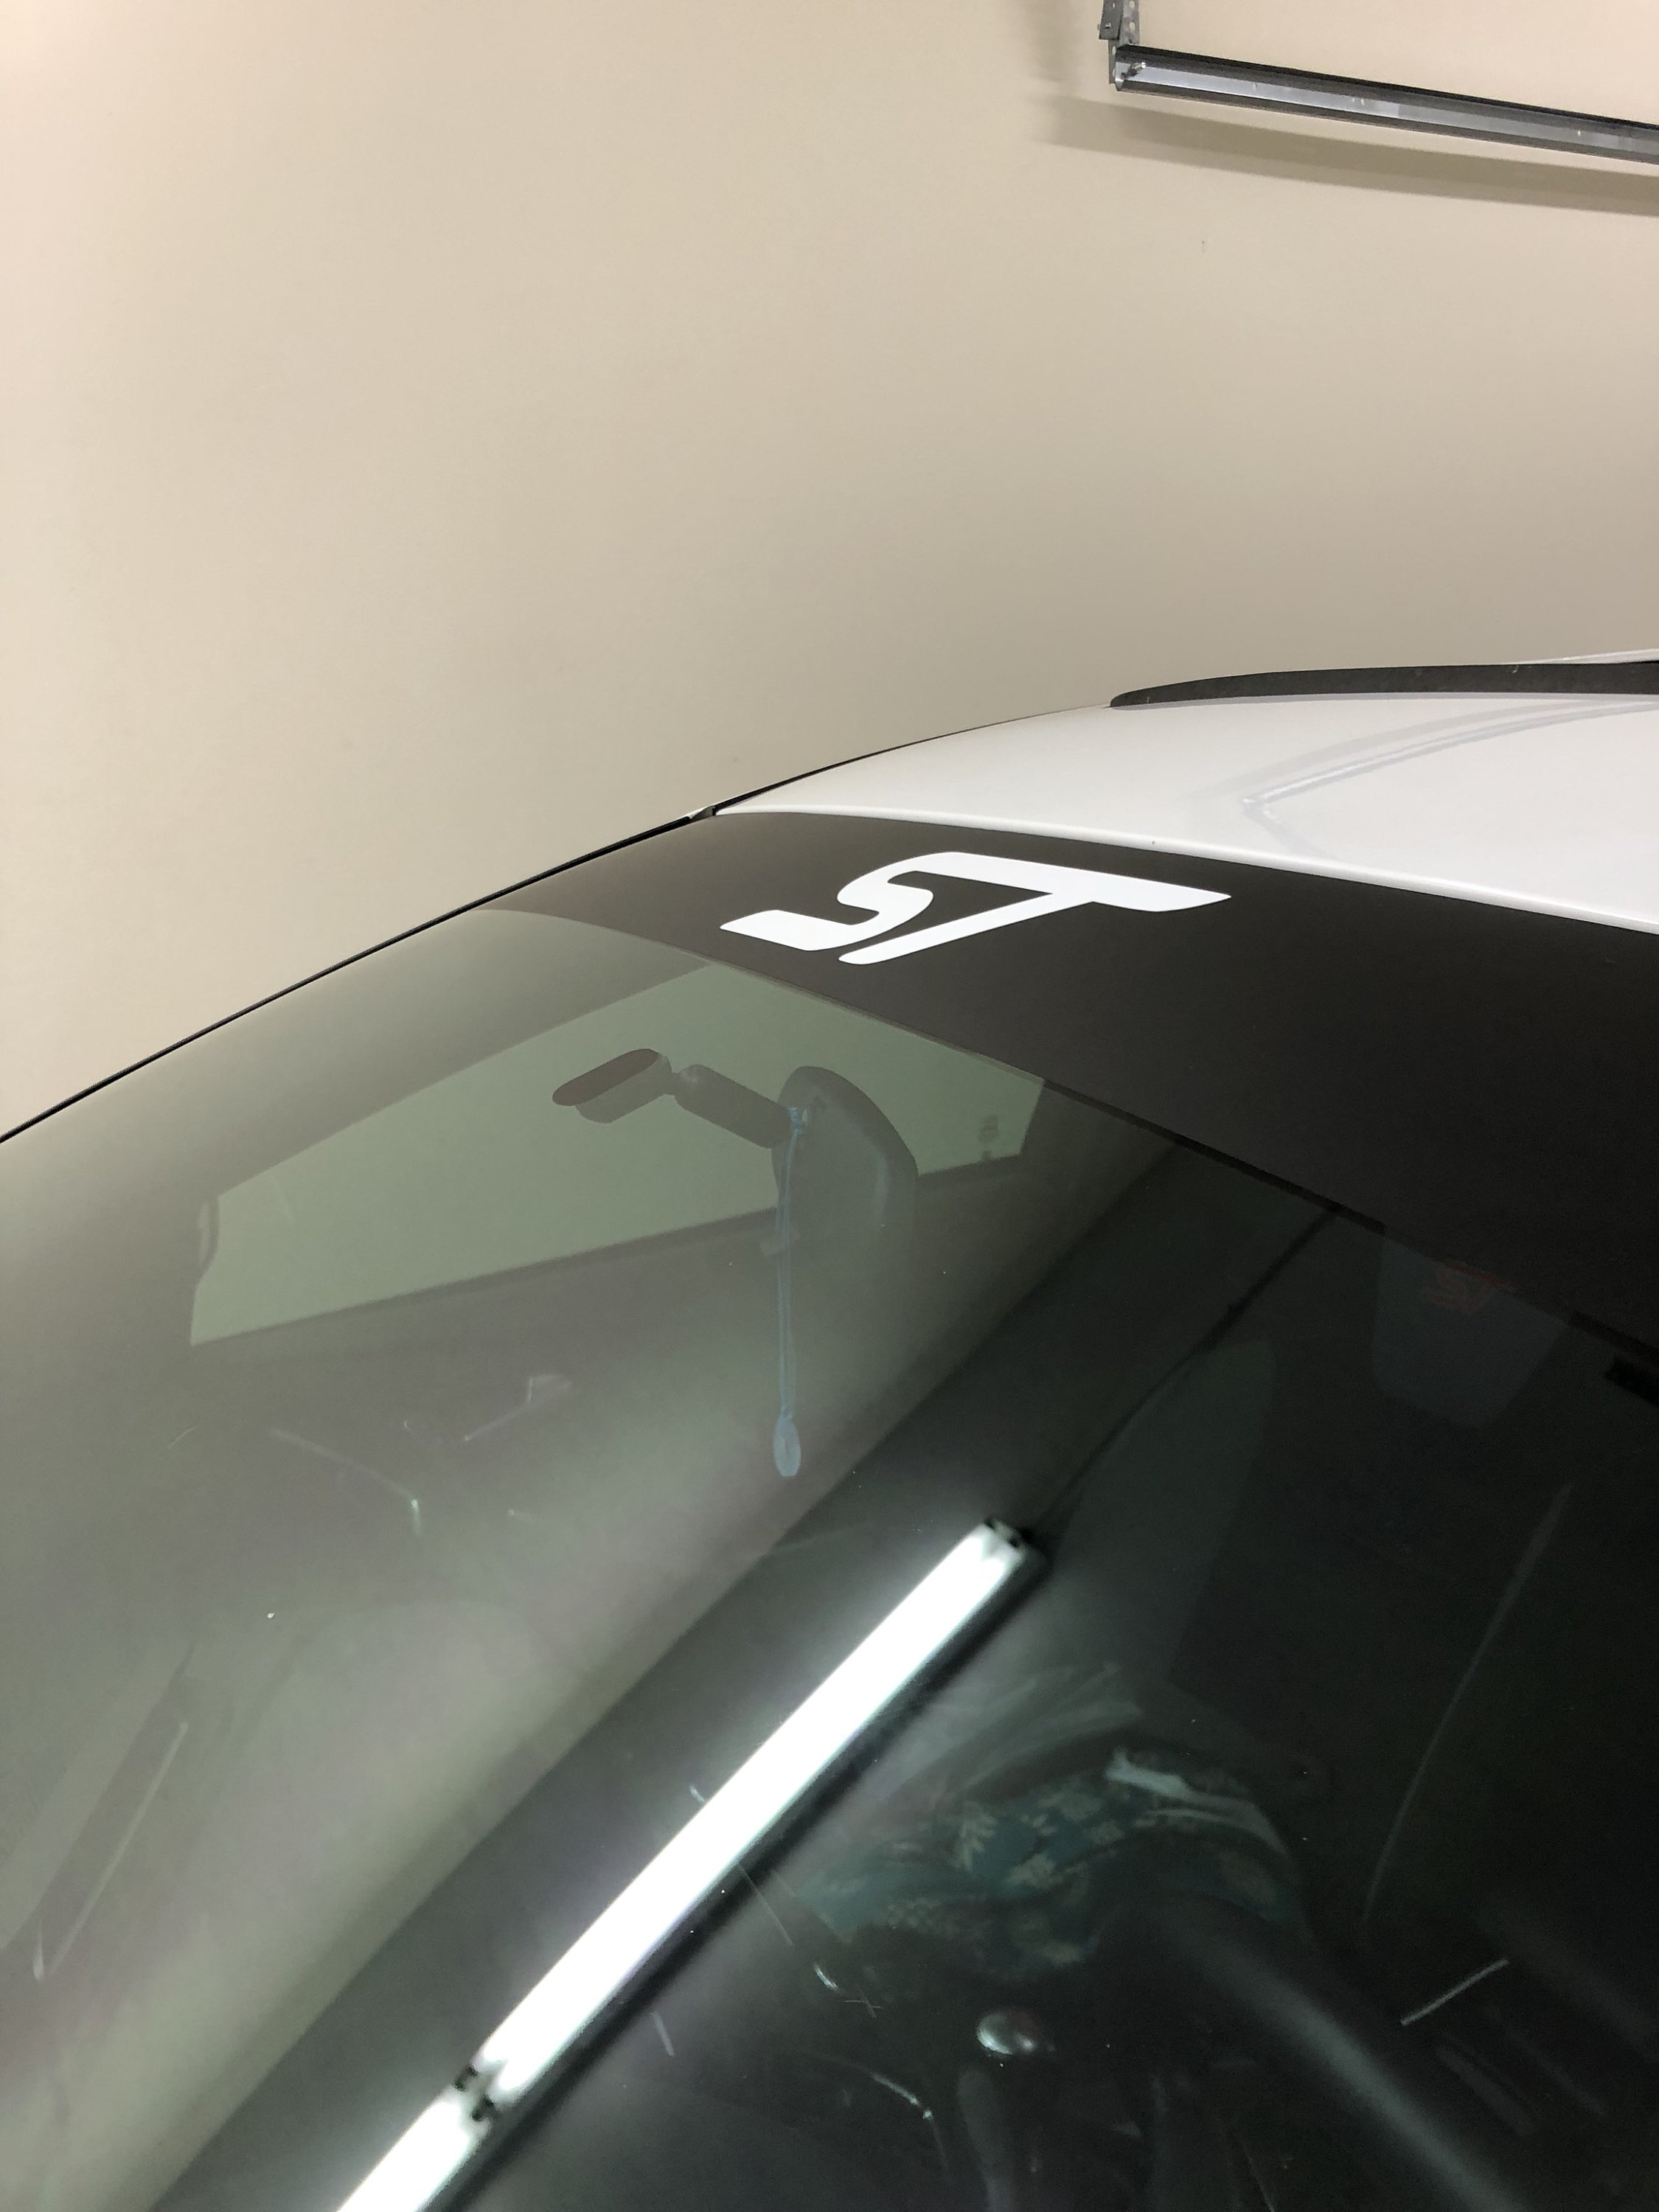 Ford Fiesta ST windscreen sunstrip car graphics focus decal sticker ss22 